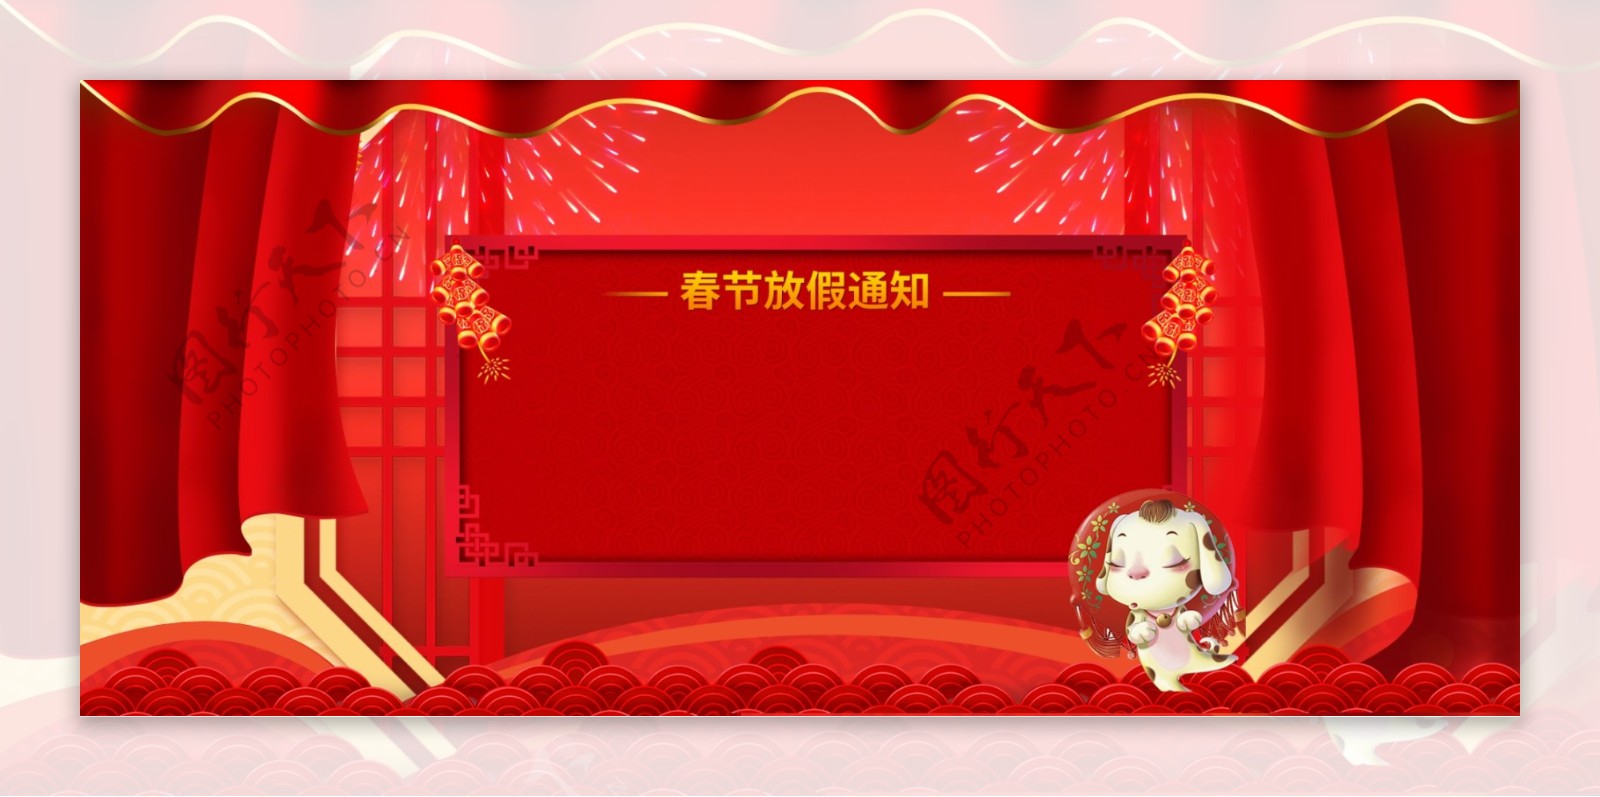 春节放假通知文艺红色背景